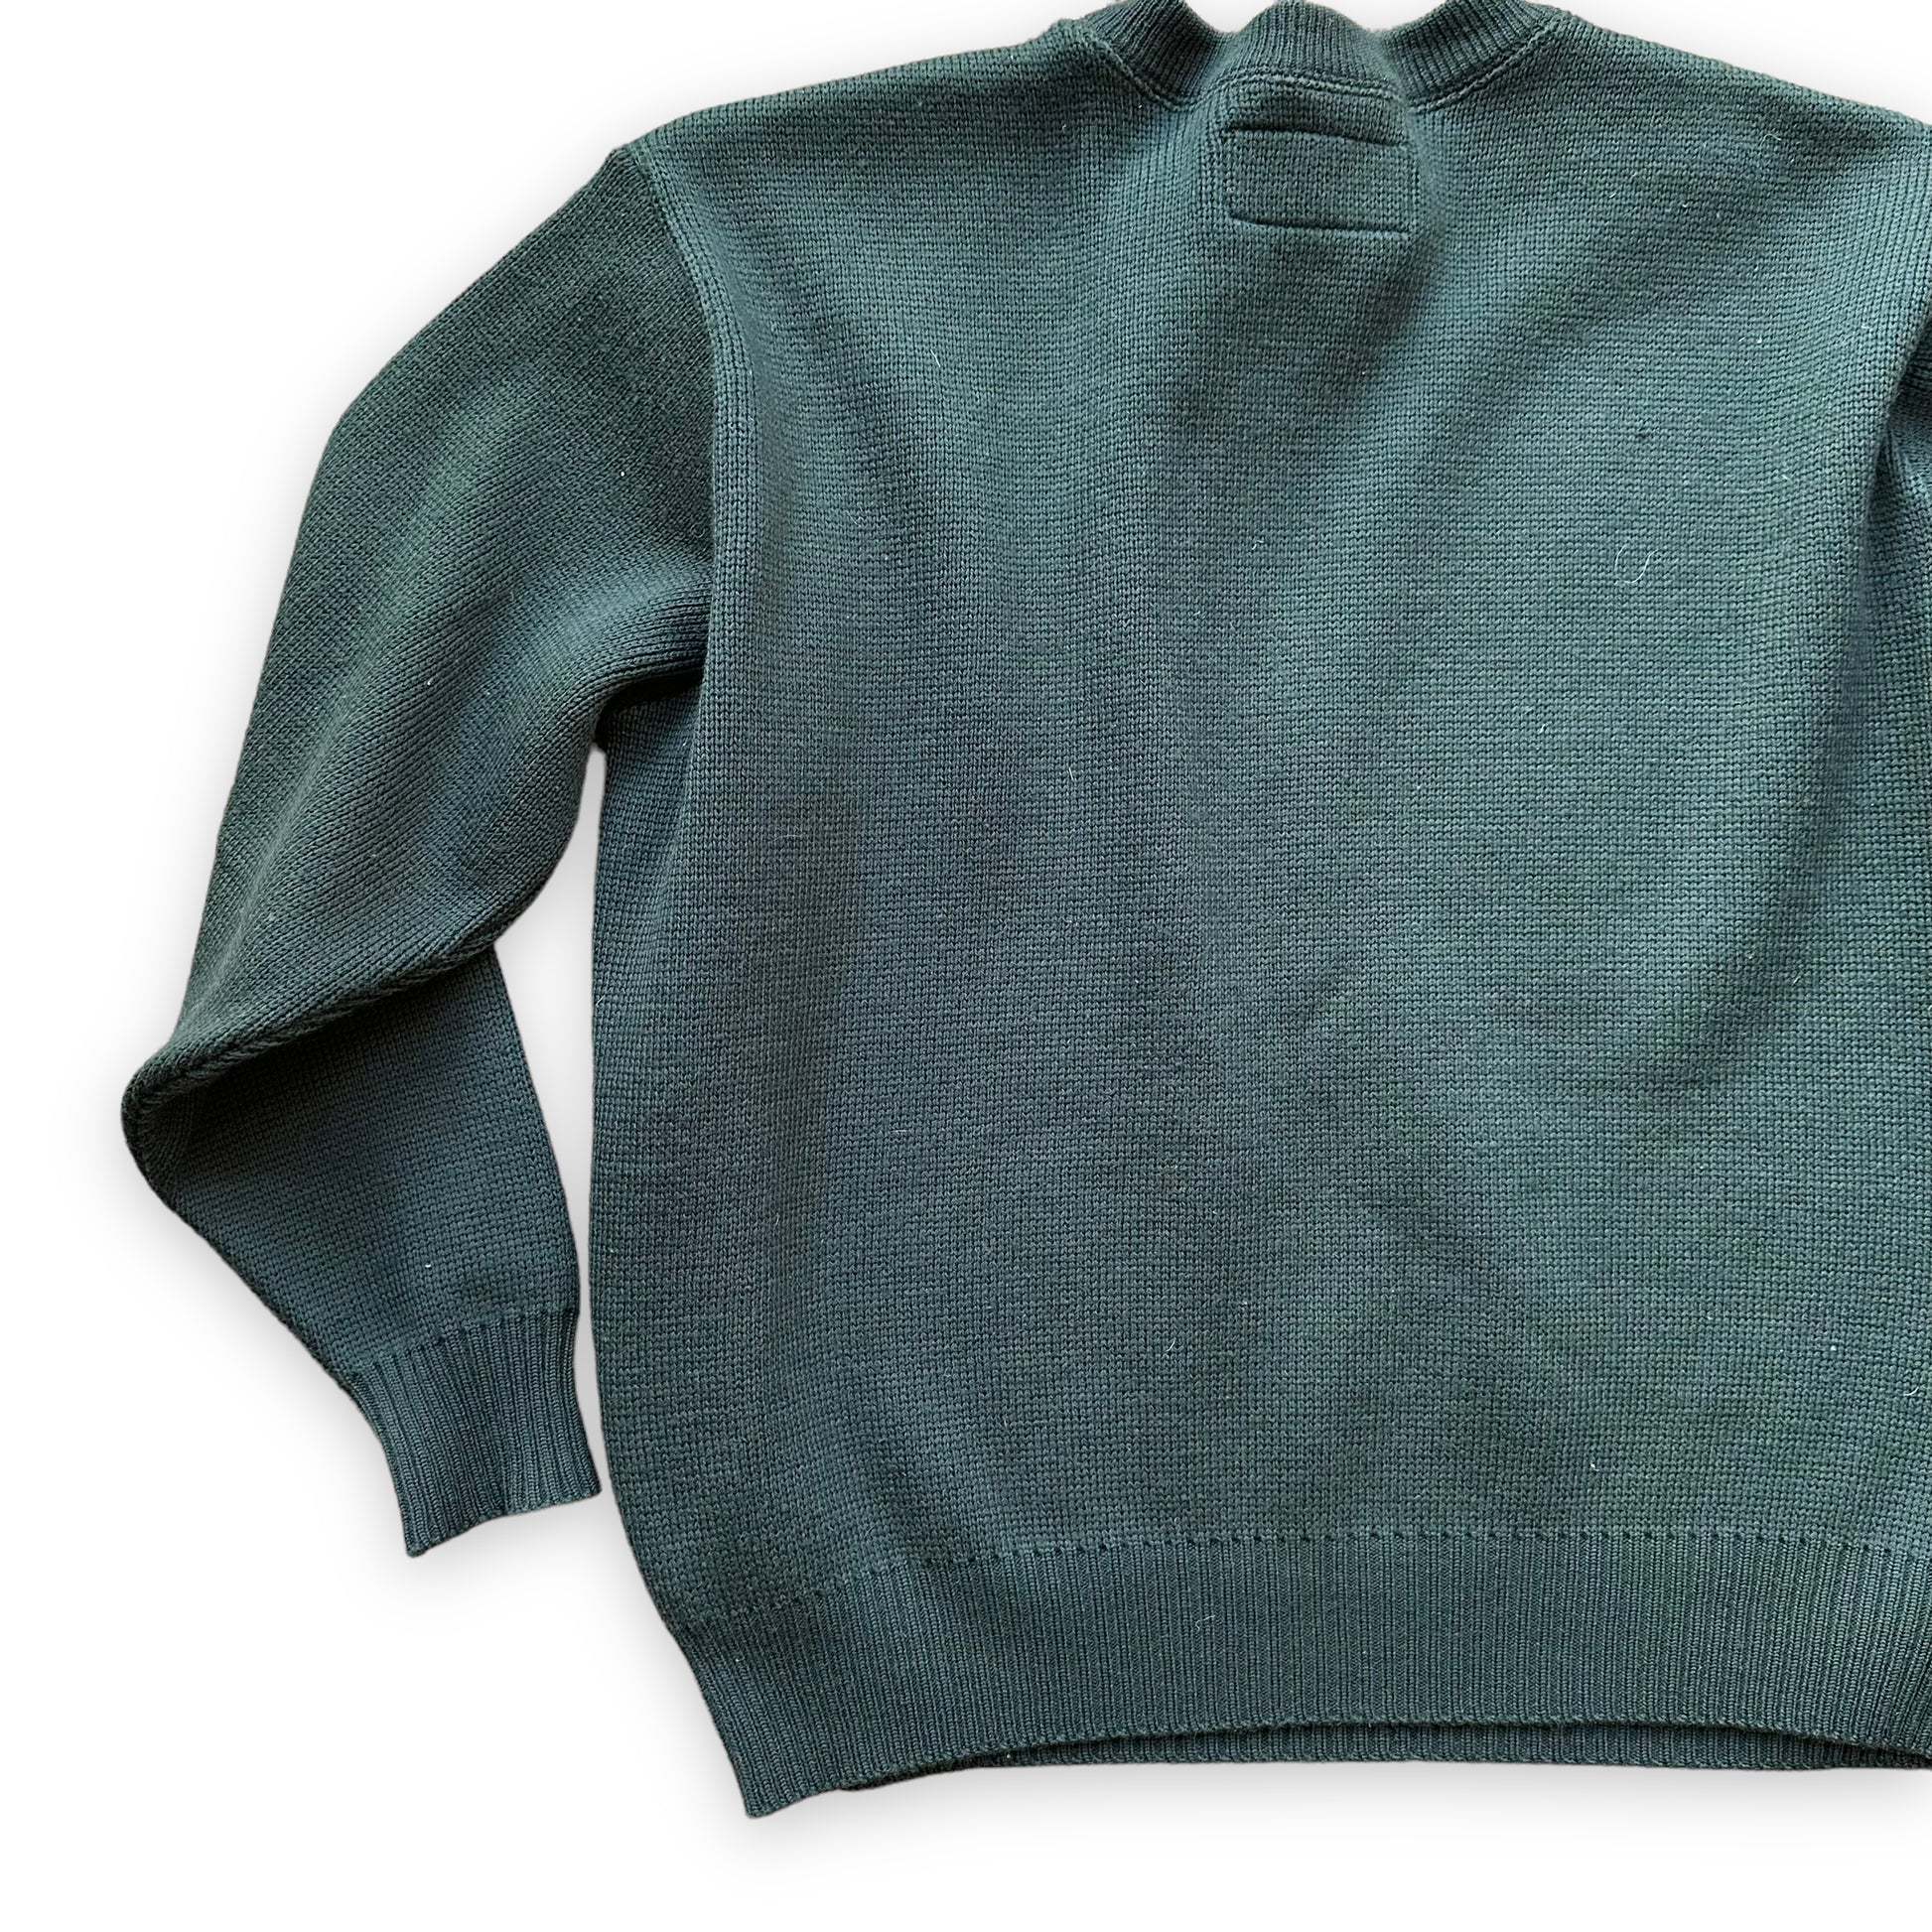 Rear Left View of Filson Guide Sweater SZ L |  Barn Owl Vintage Goods | Vintage Filson Workwear Sweaters Seattle